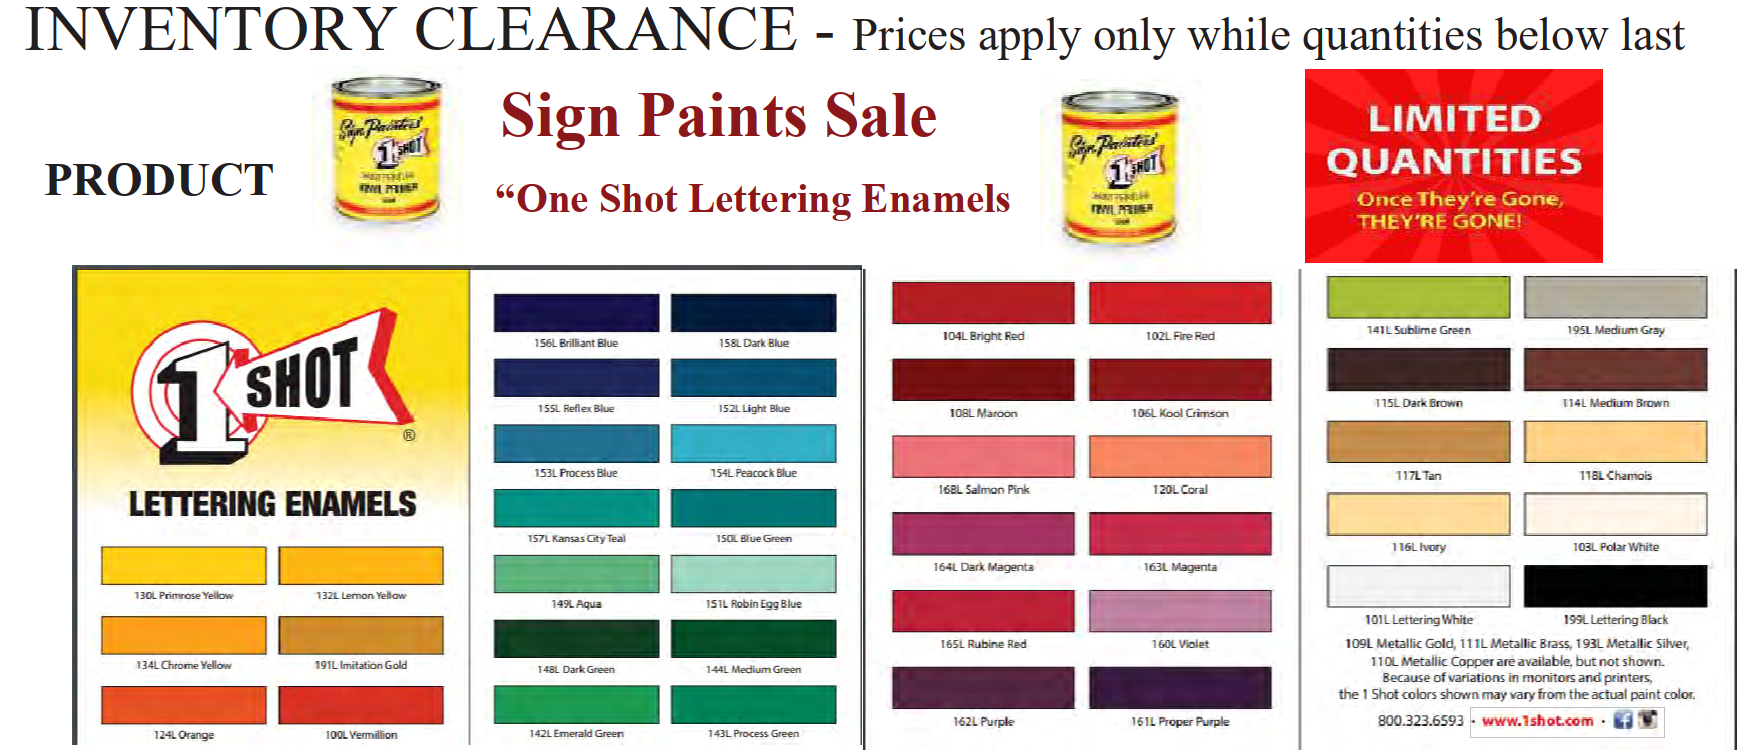 paint paint sale - SIGN PAINTS SALE